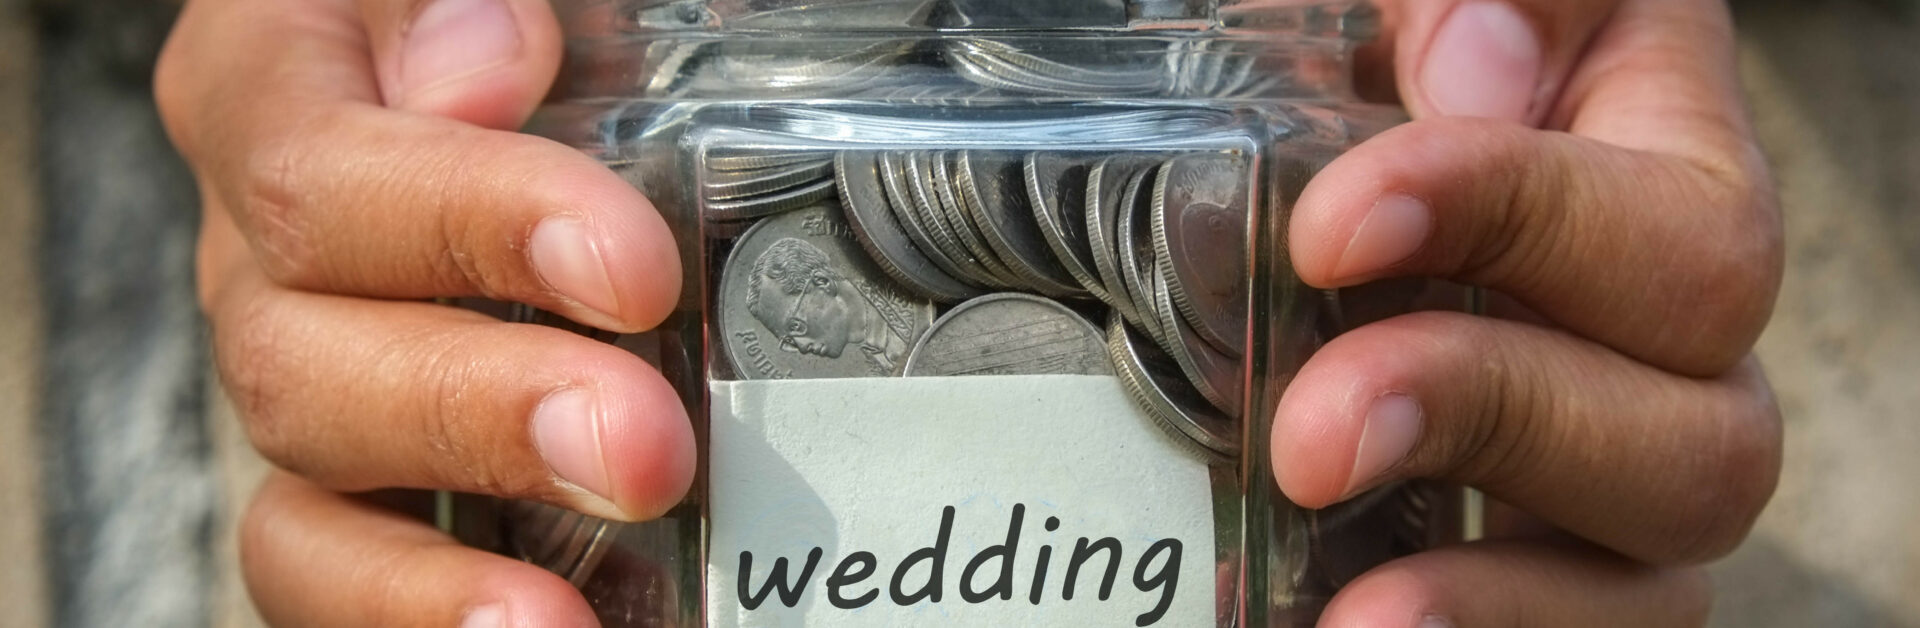 Finanzierung Hochzeit, Glas mit Münzen